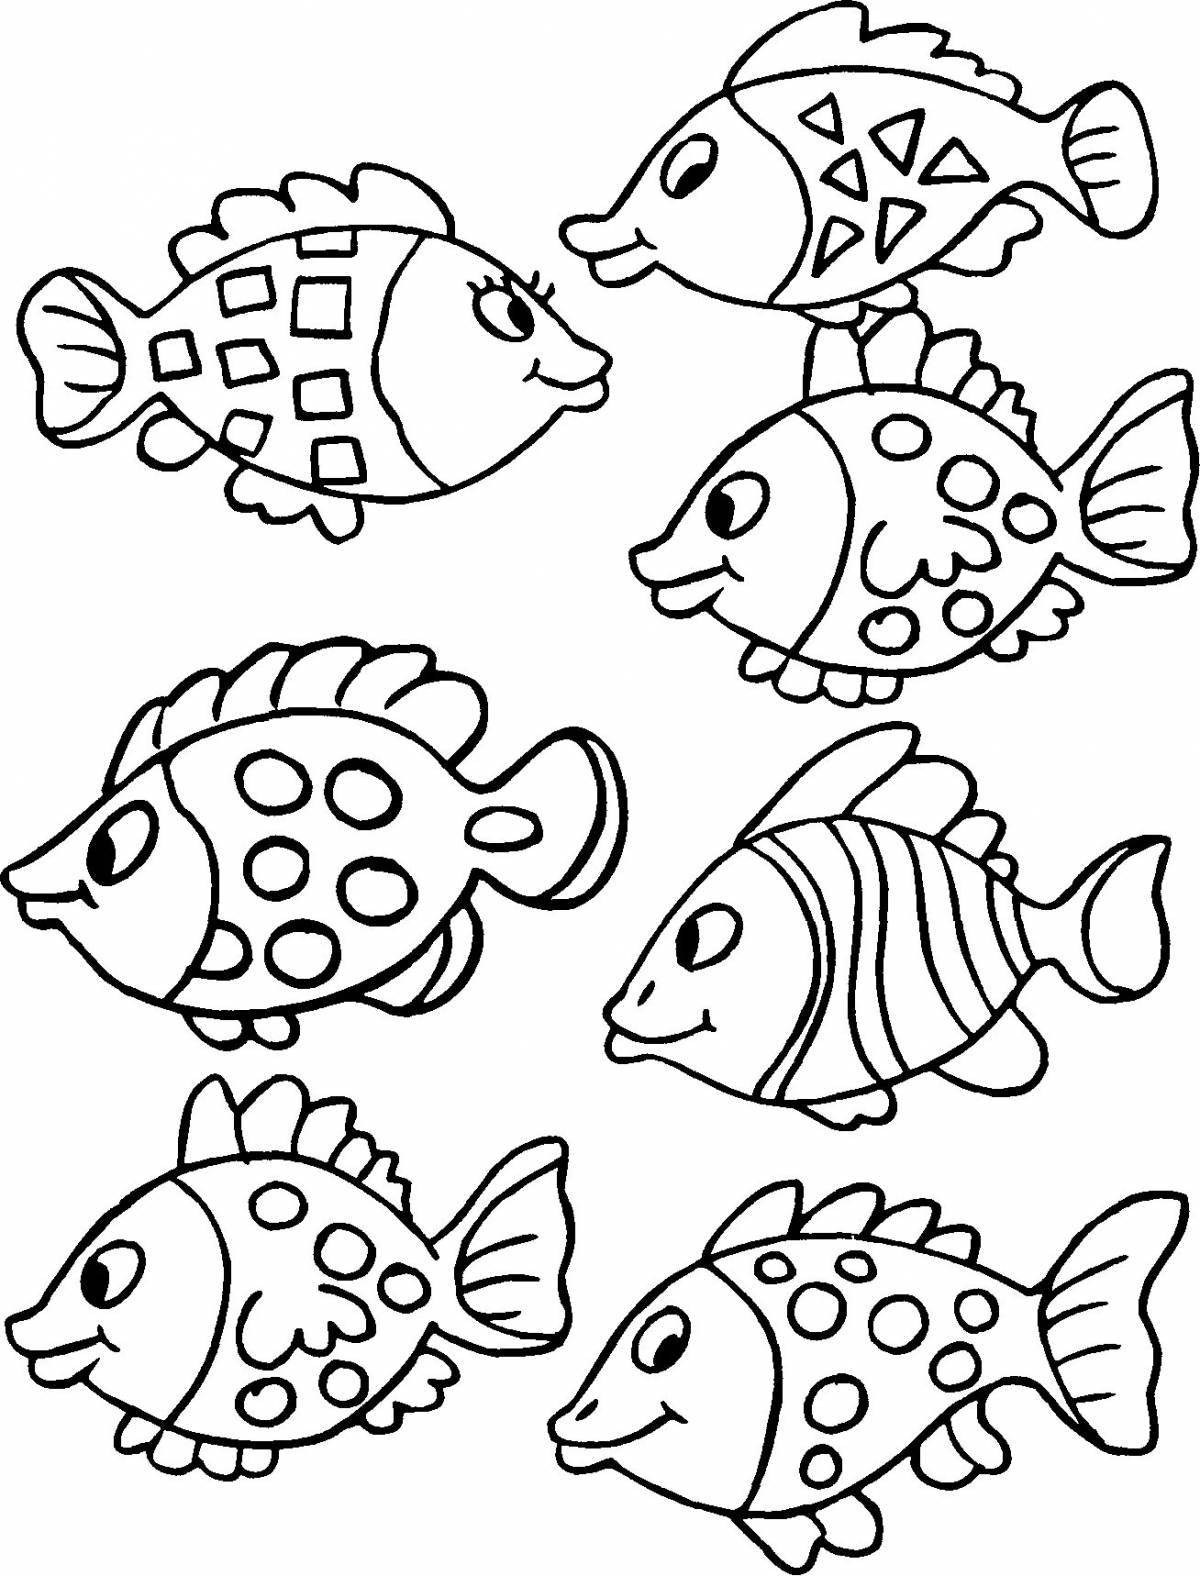 Раскраска рисунка одной рыбки